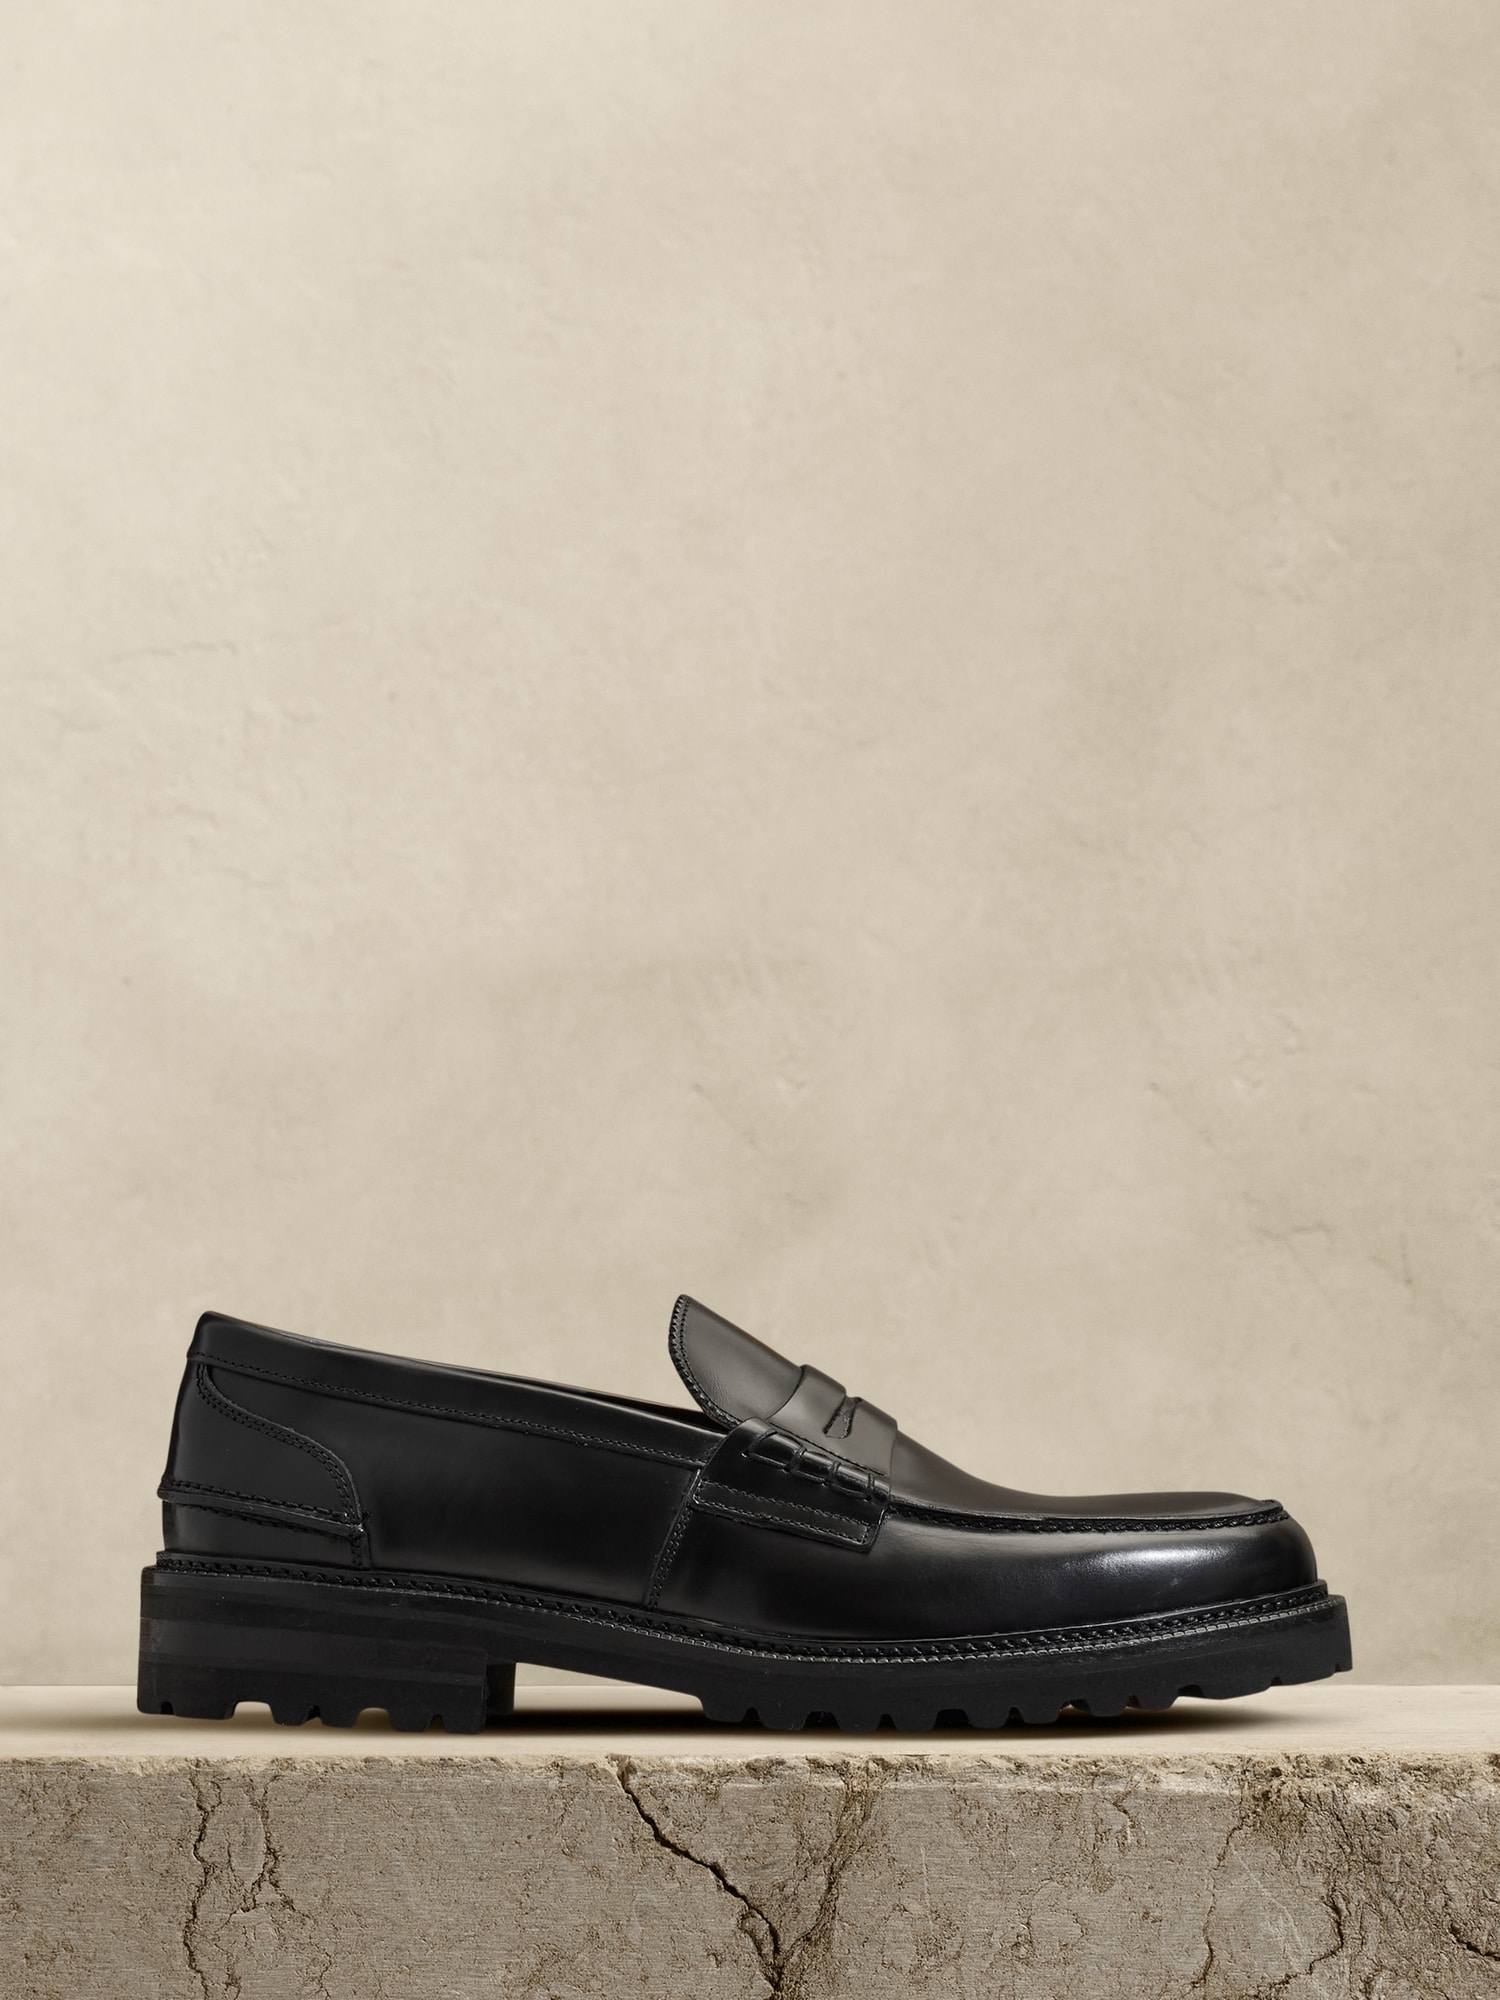 ドレス/ビジネス【美品】バナナ・リパブリック 革靴 イタリア製 黒 25.5cm 除菌・消臭済み